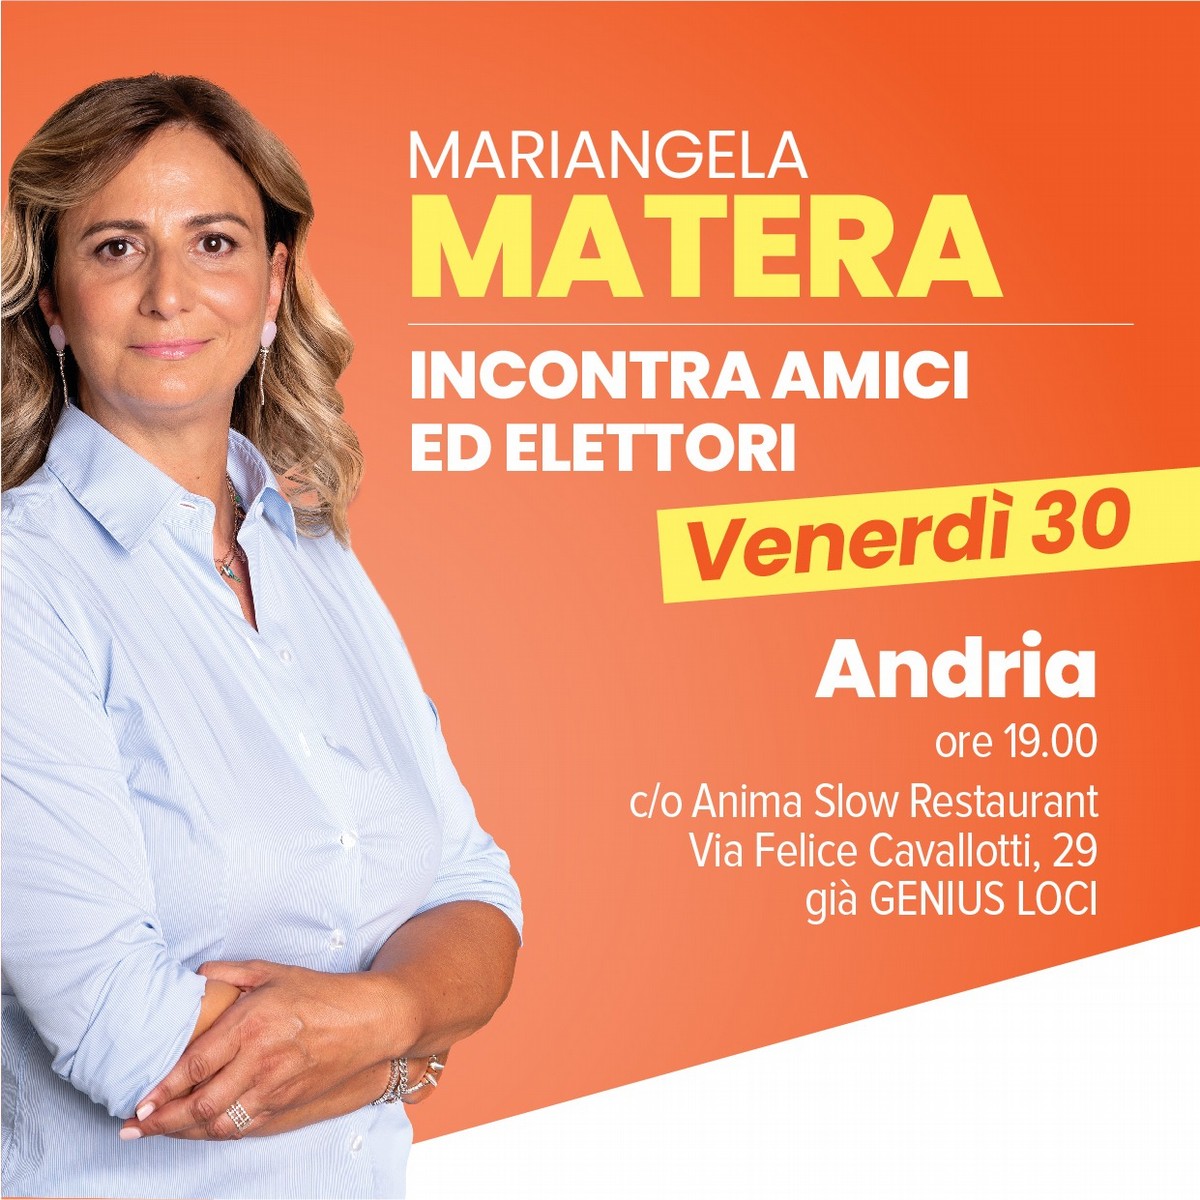 Mariangela Matera incontra gli elettori ad Andria